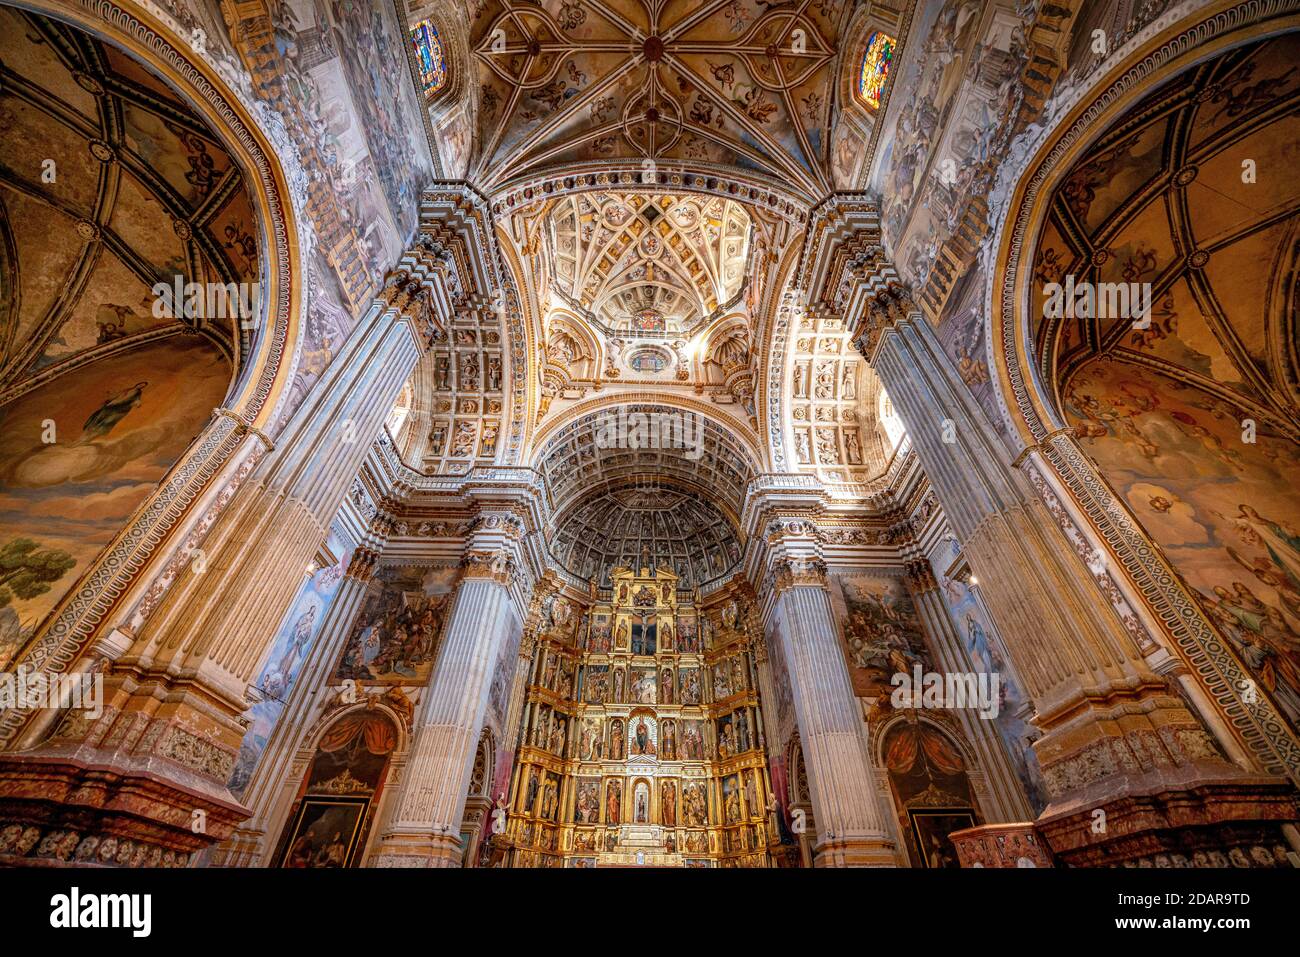 Goldener Hochaltar, Innenraum, Zierdecke, Renaissance-Kirche und Kloster, Monasterio de San Jeronimo, Granada, Andalusien, Spanien Stockfoto